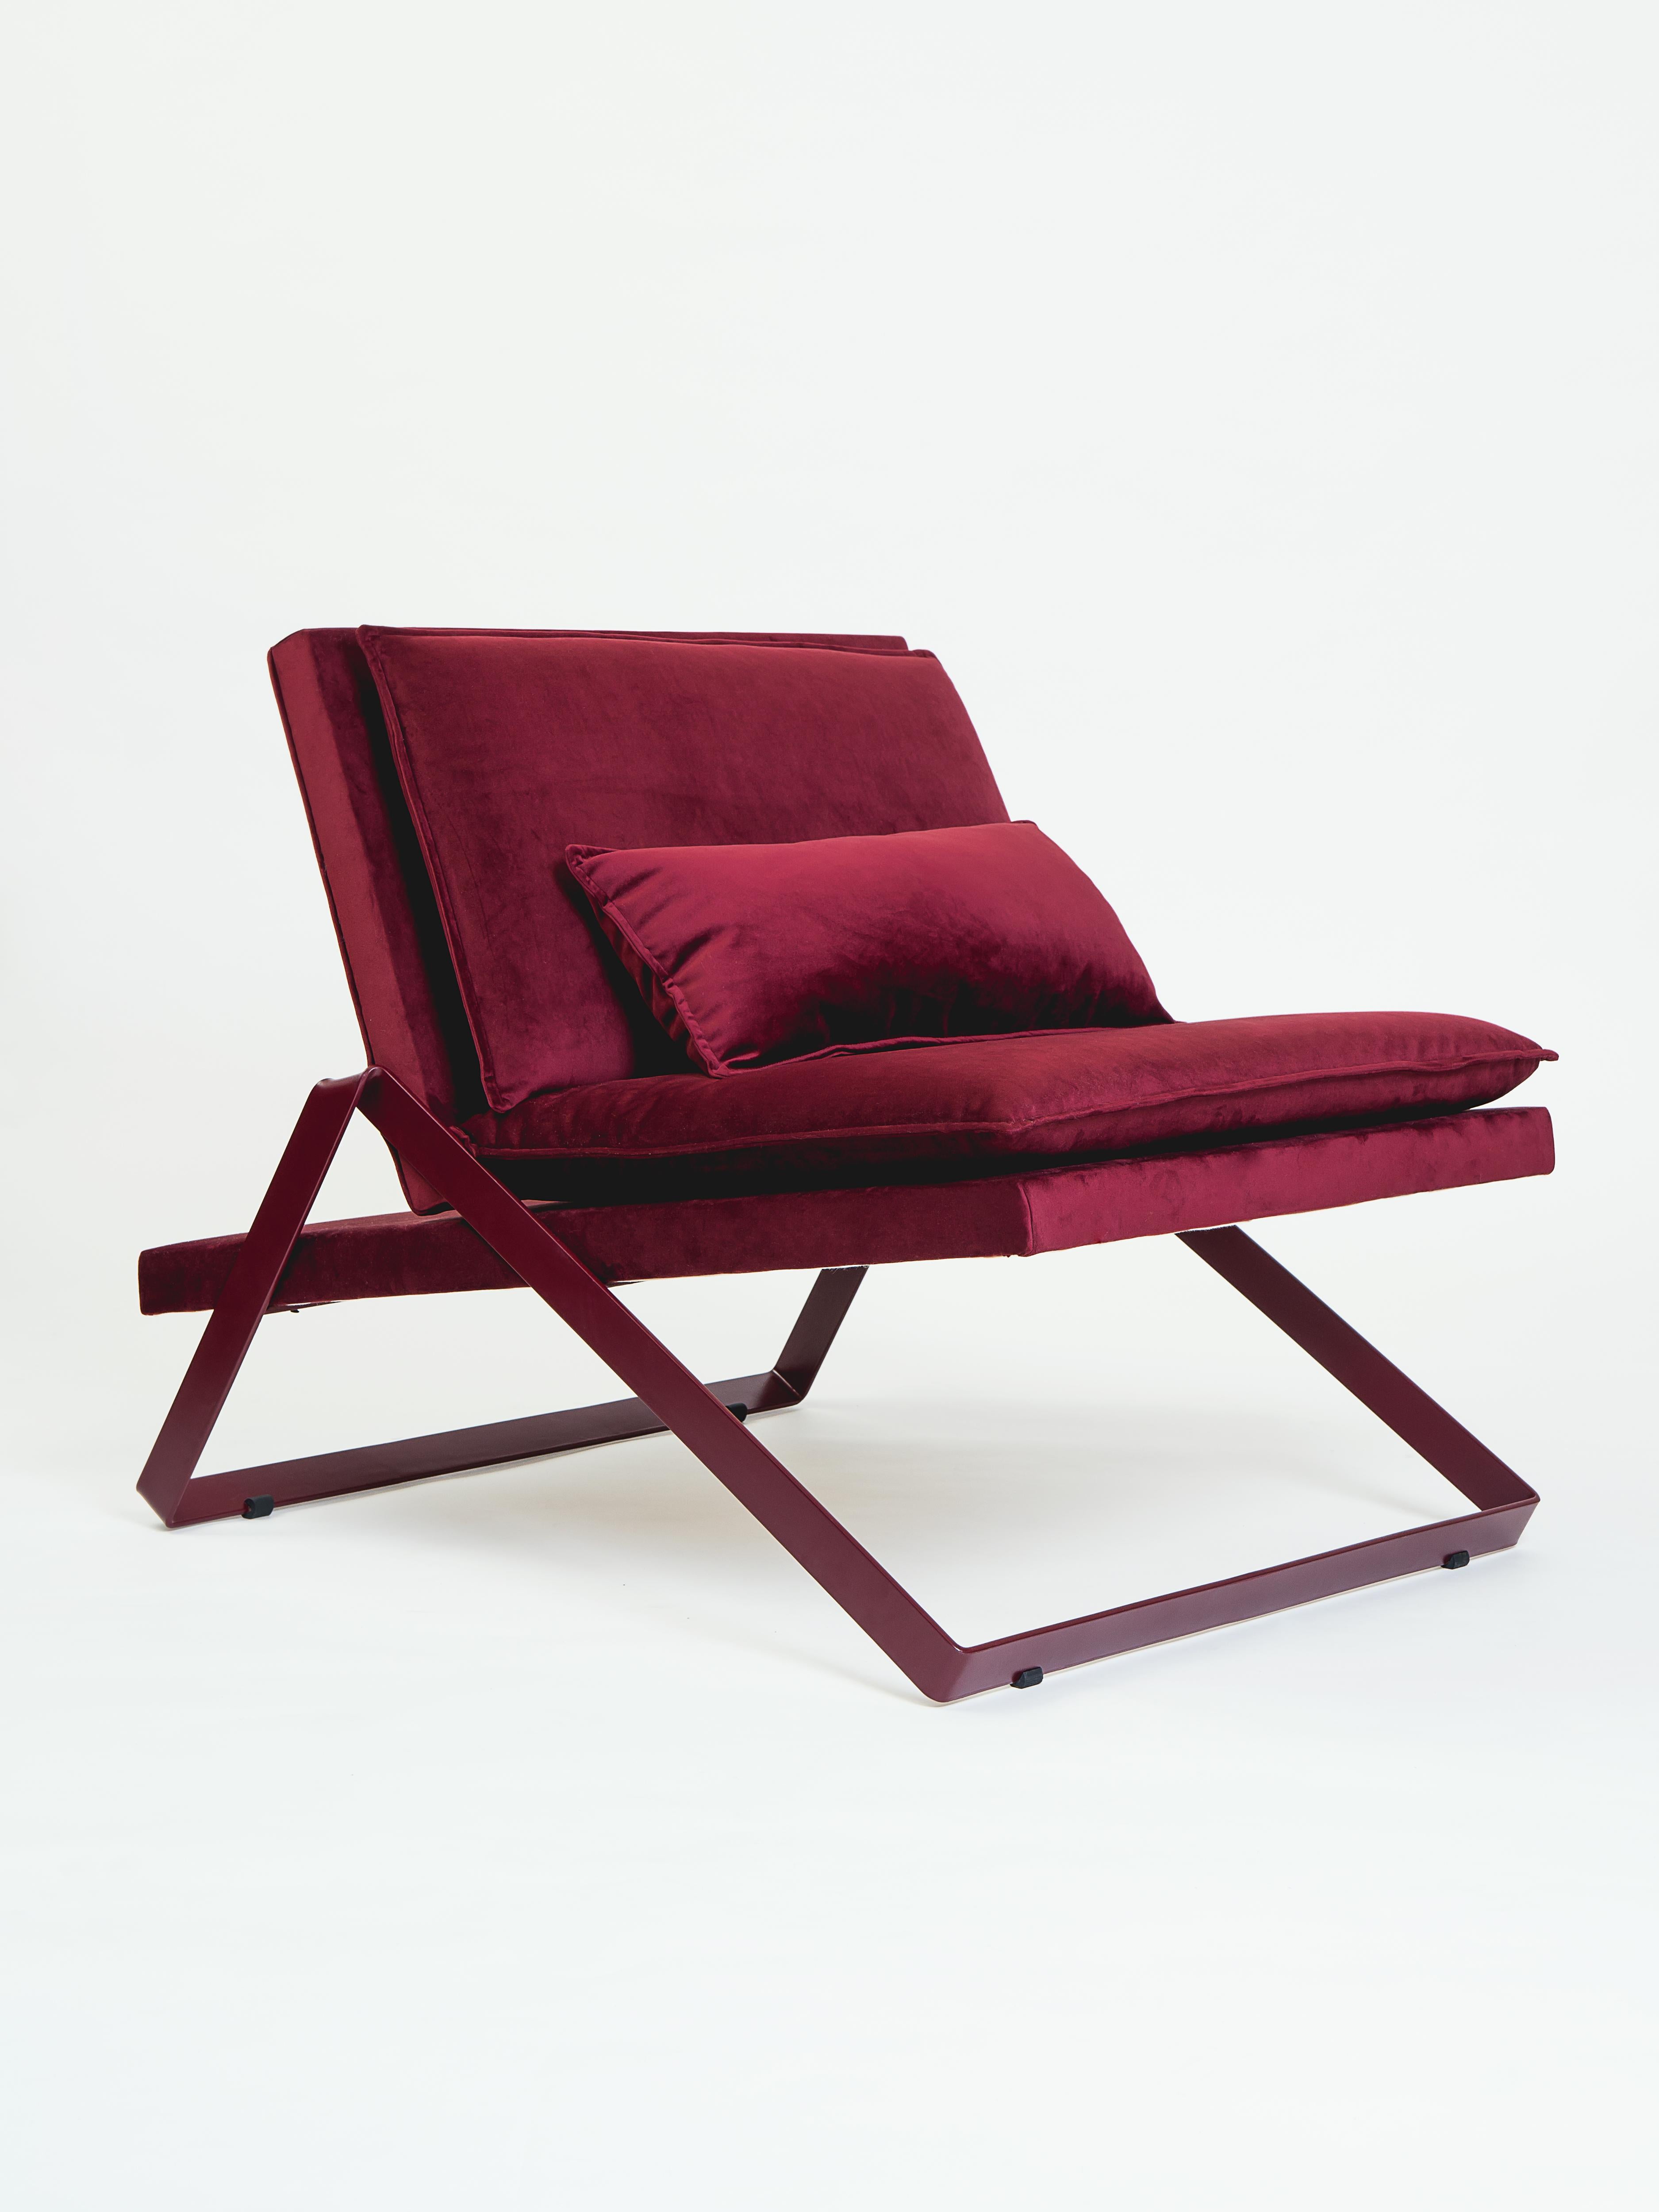 La chaise DOBRA fait partie de la ligne de meubles Dobra, conçue selon le concept d'une barre d'acier continue pliée pour créer des pieds et des cadres pour les différents composants.
